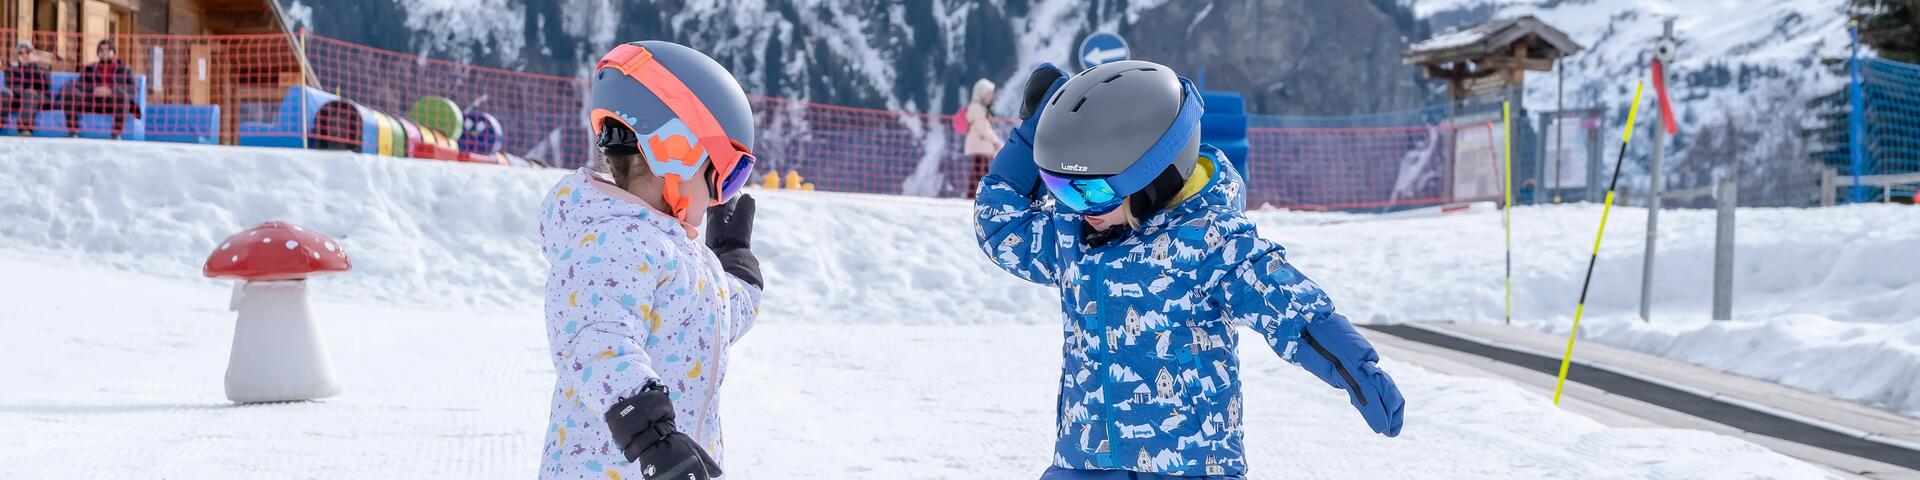 2 kids preparing for a ski session